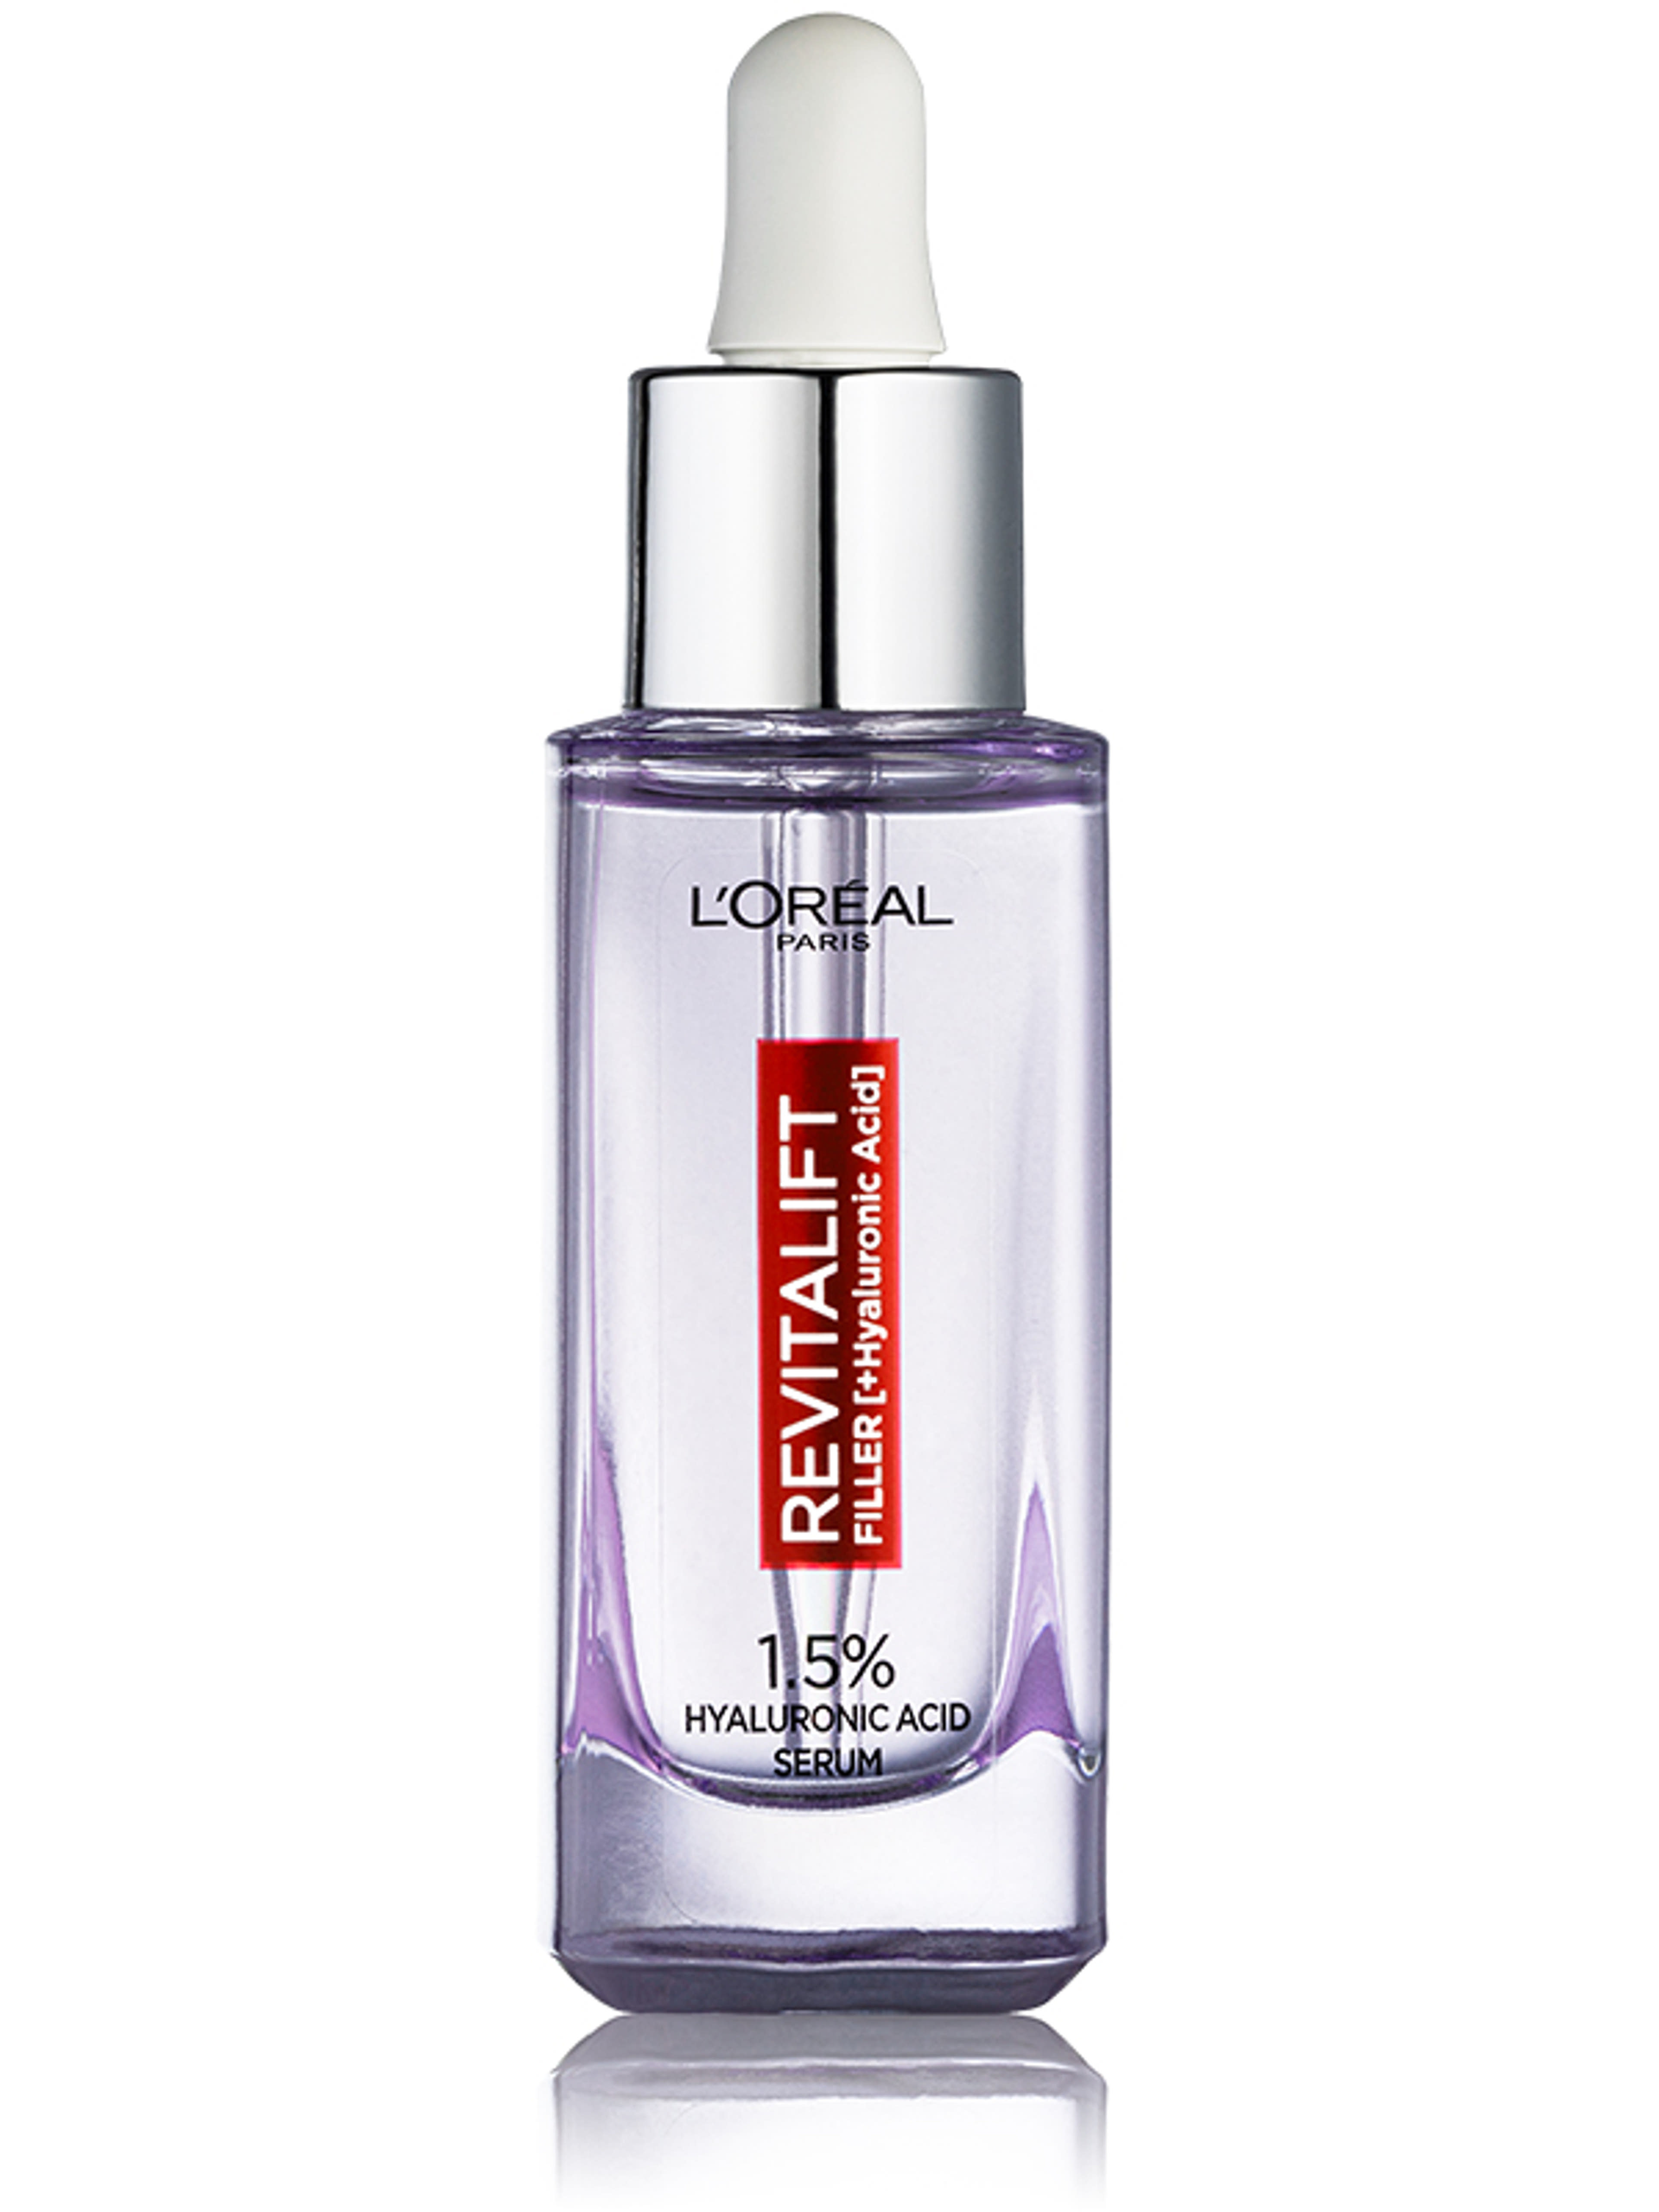 L'Oréal Paris Revitalift Filler ránctalanító szérum 1,5% tiszta hialuronsavval - 30 ml